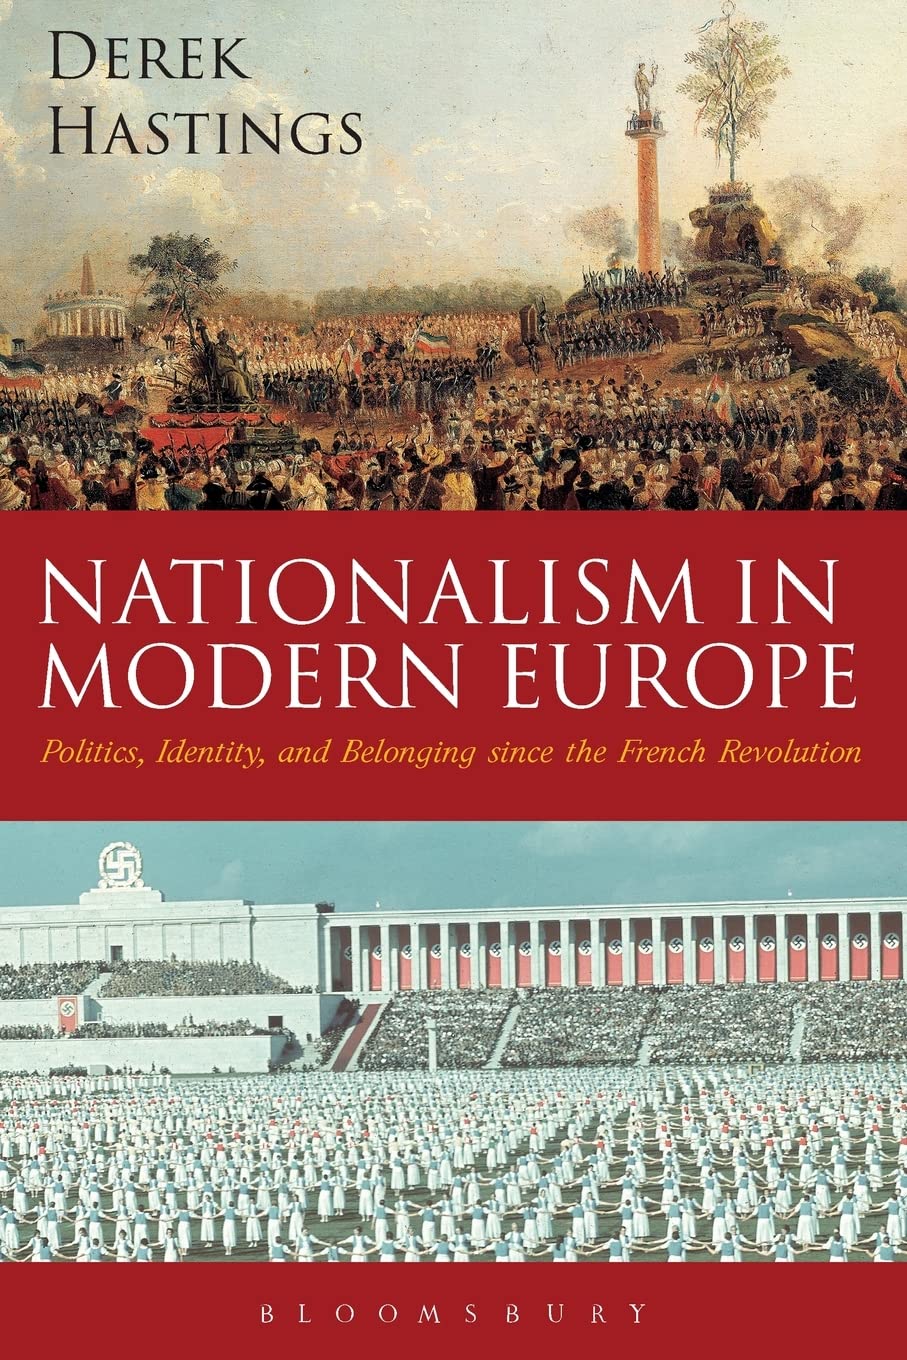 Derek Hastings: Nationalism in Modern Europe (2018, Bloomsbury Publishing Plc)